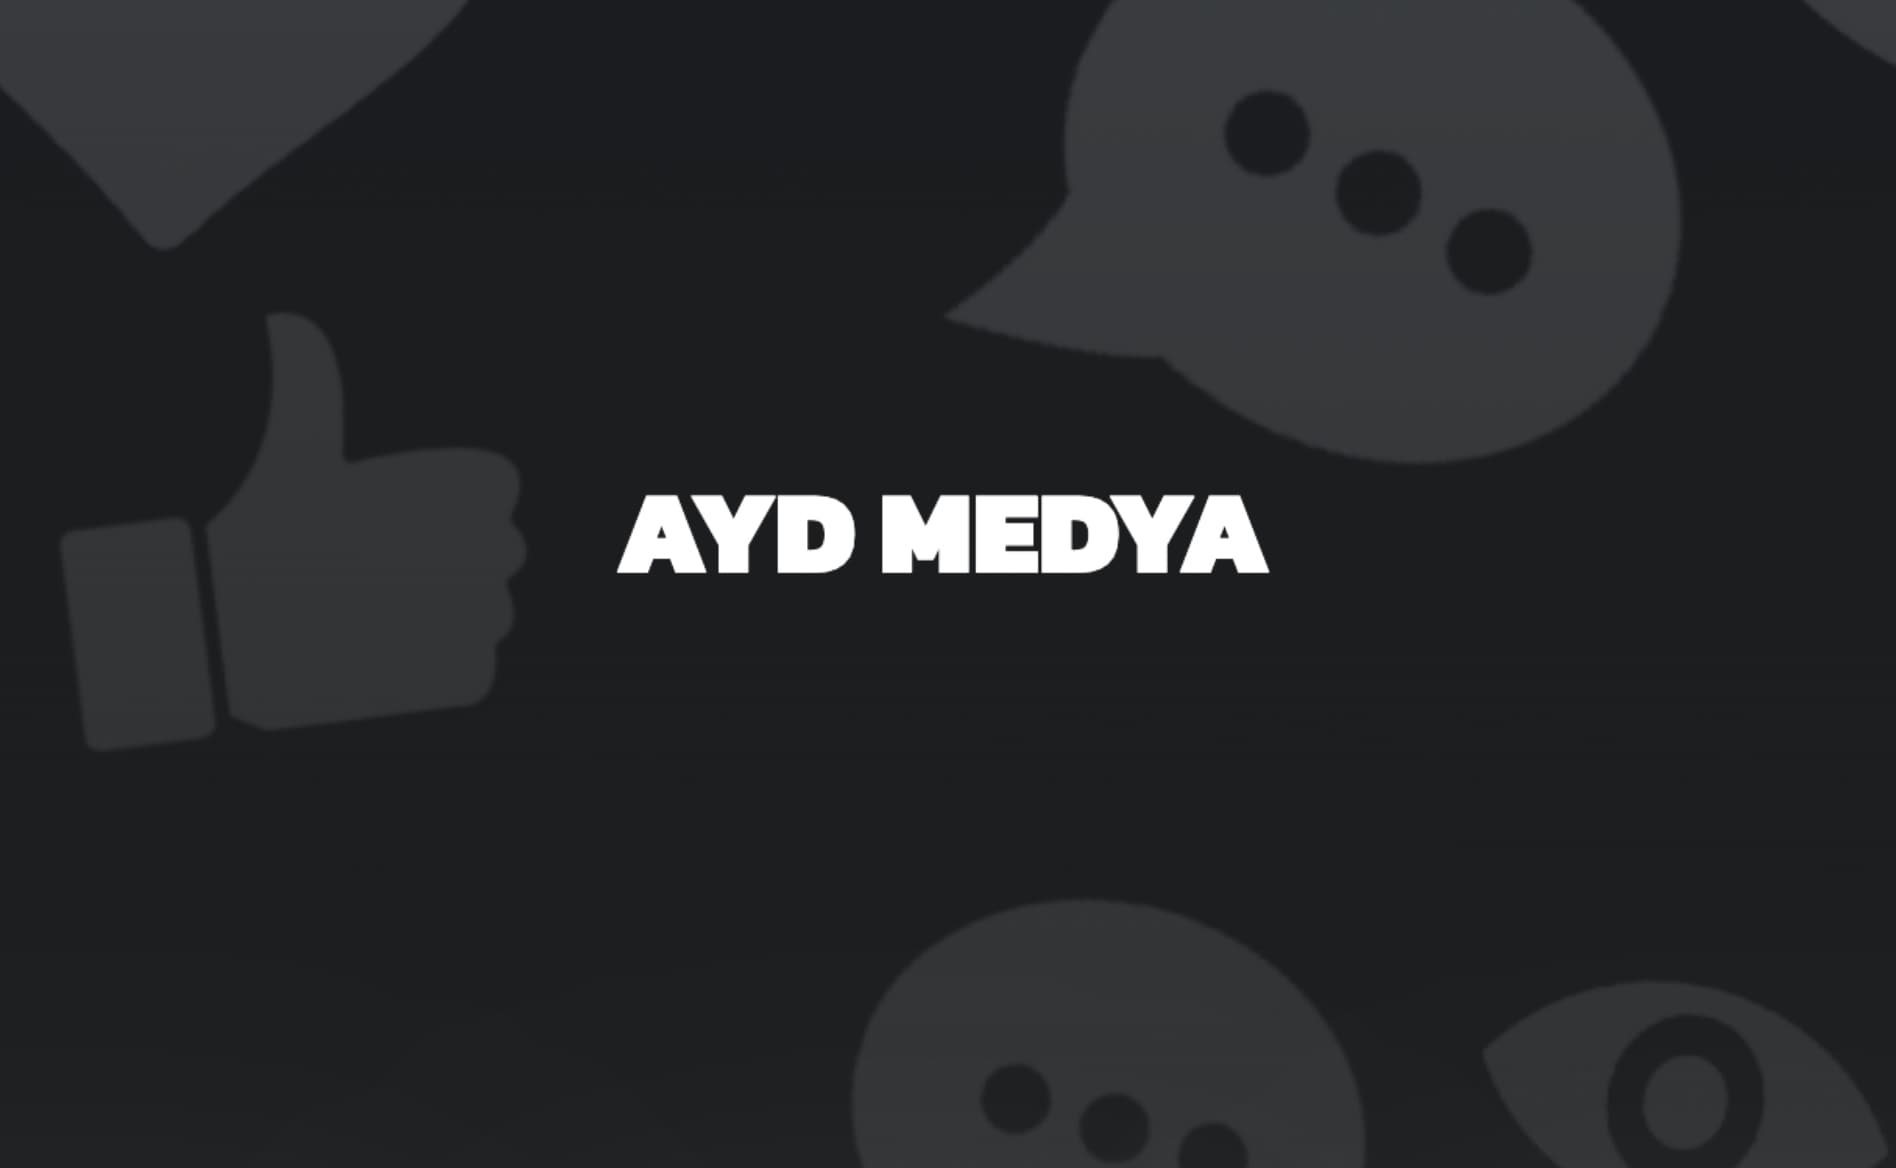 AYD MEDYA – Yenilikçi ve Güvenilir SMM Paneli